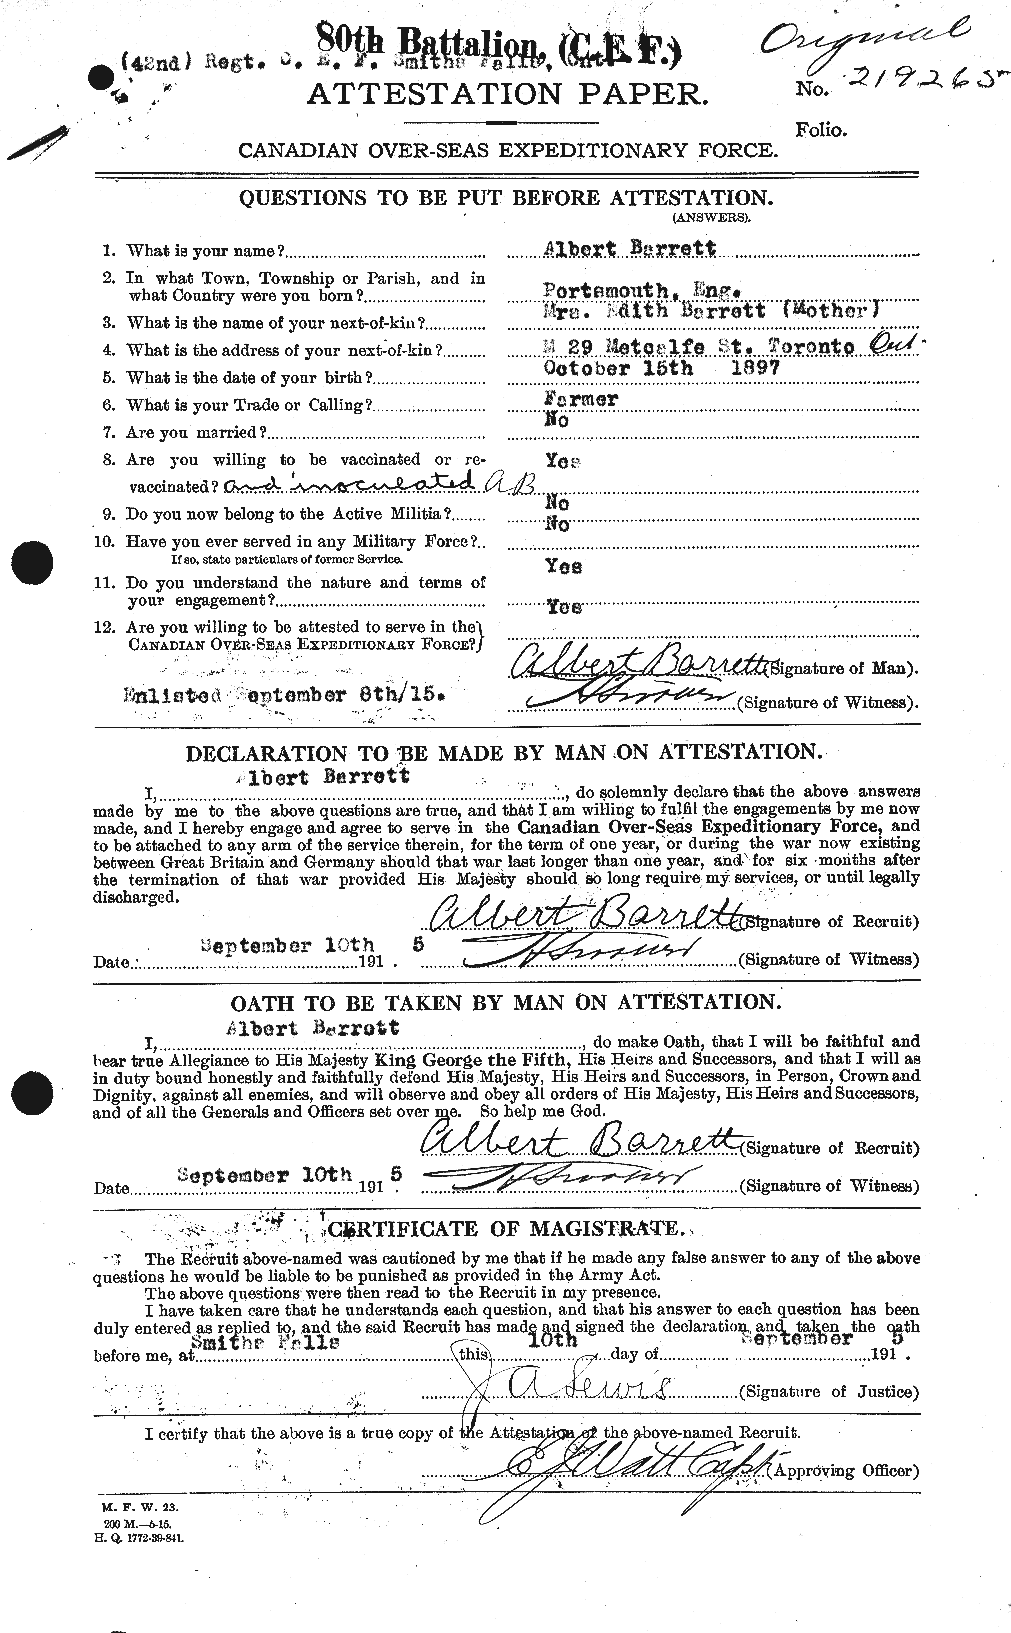 Dossiers du Personnel de la Première Guerre mondiale - CEC 222209a